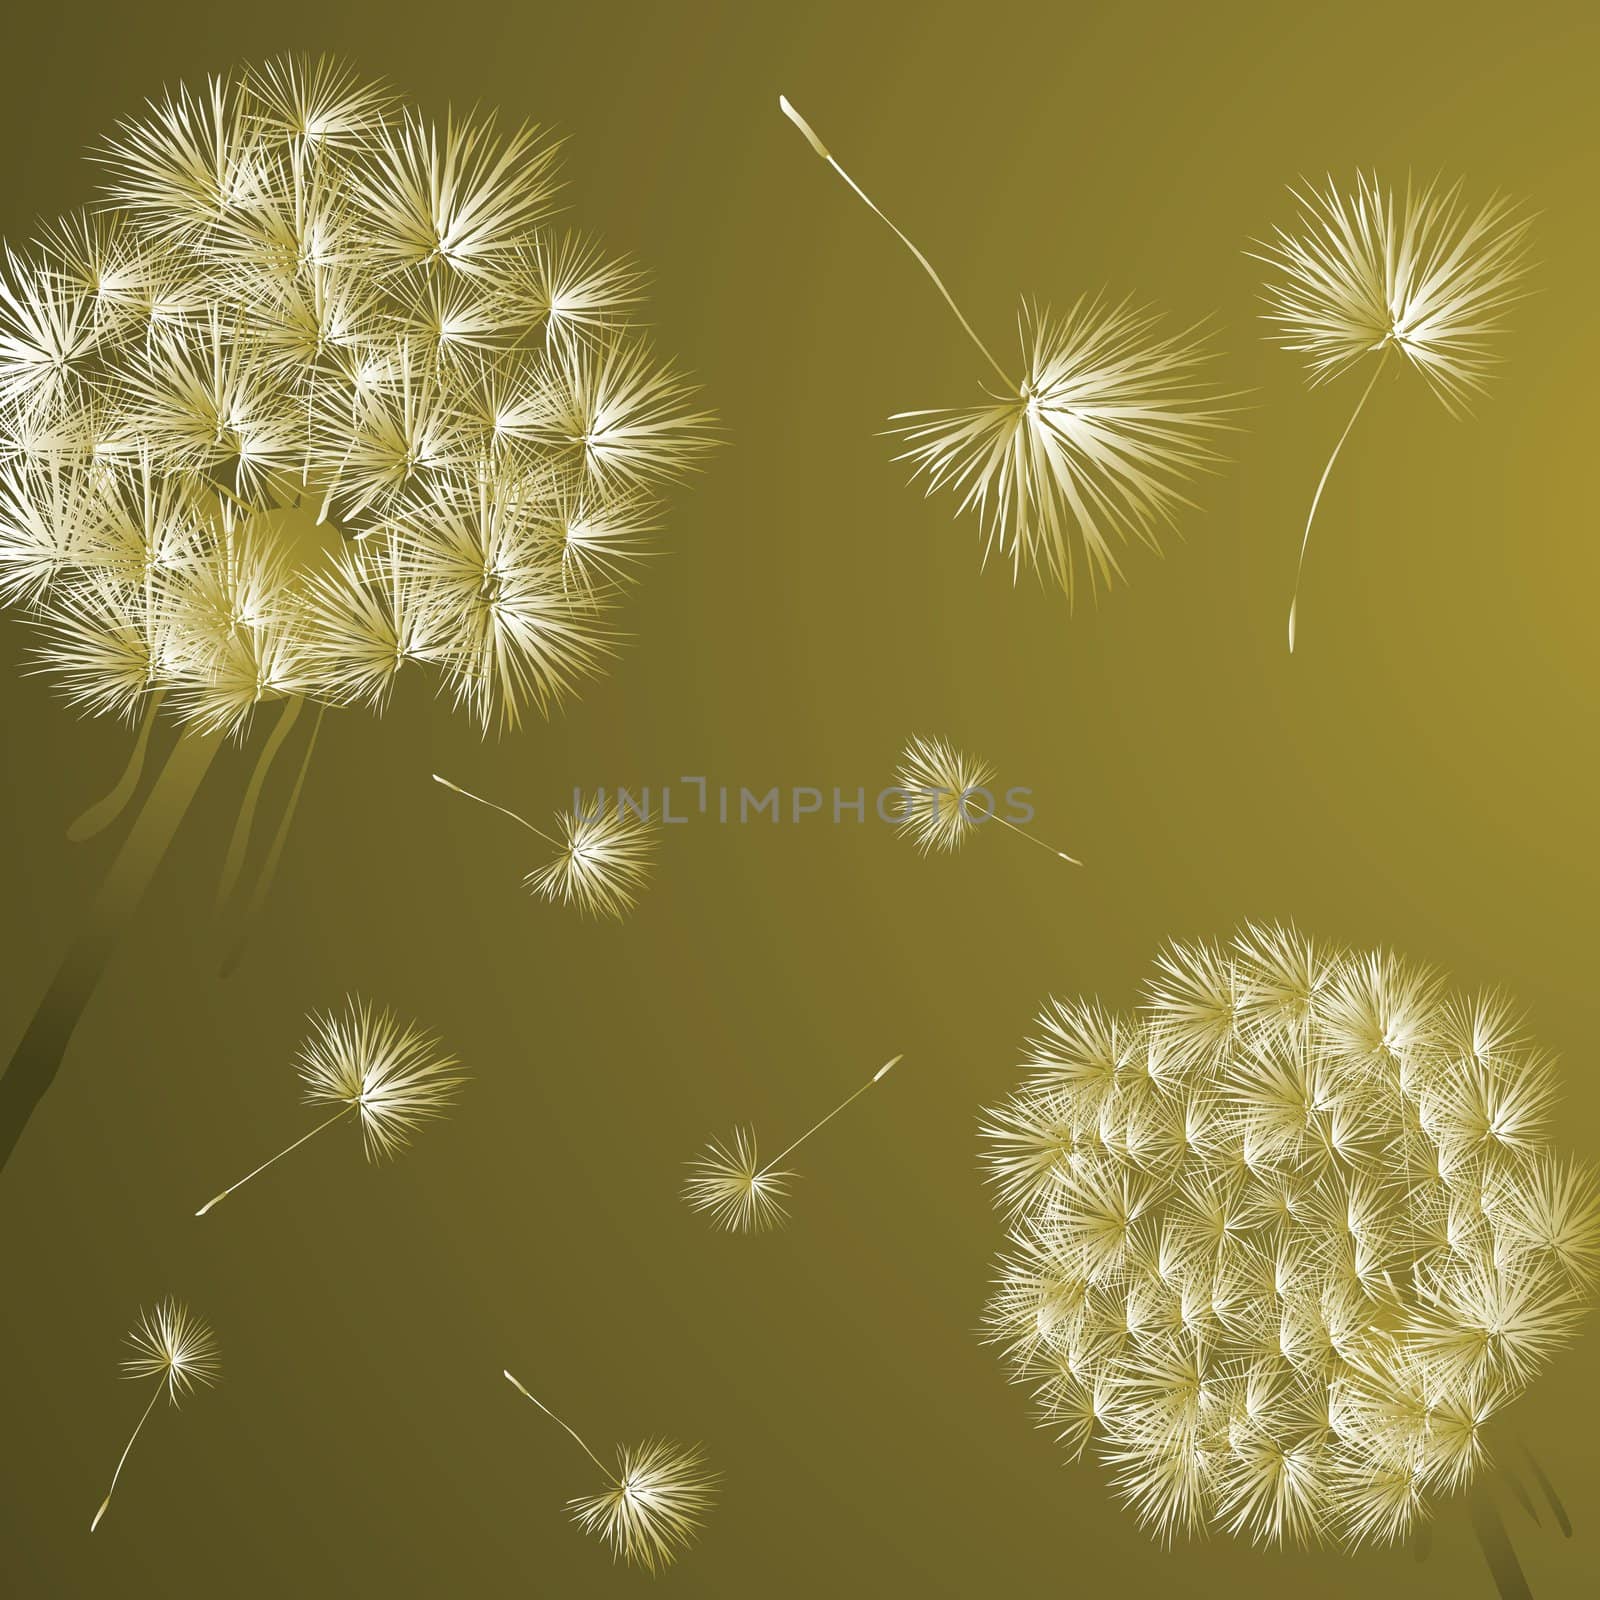 Dandelions by Lirch